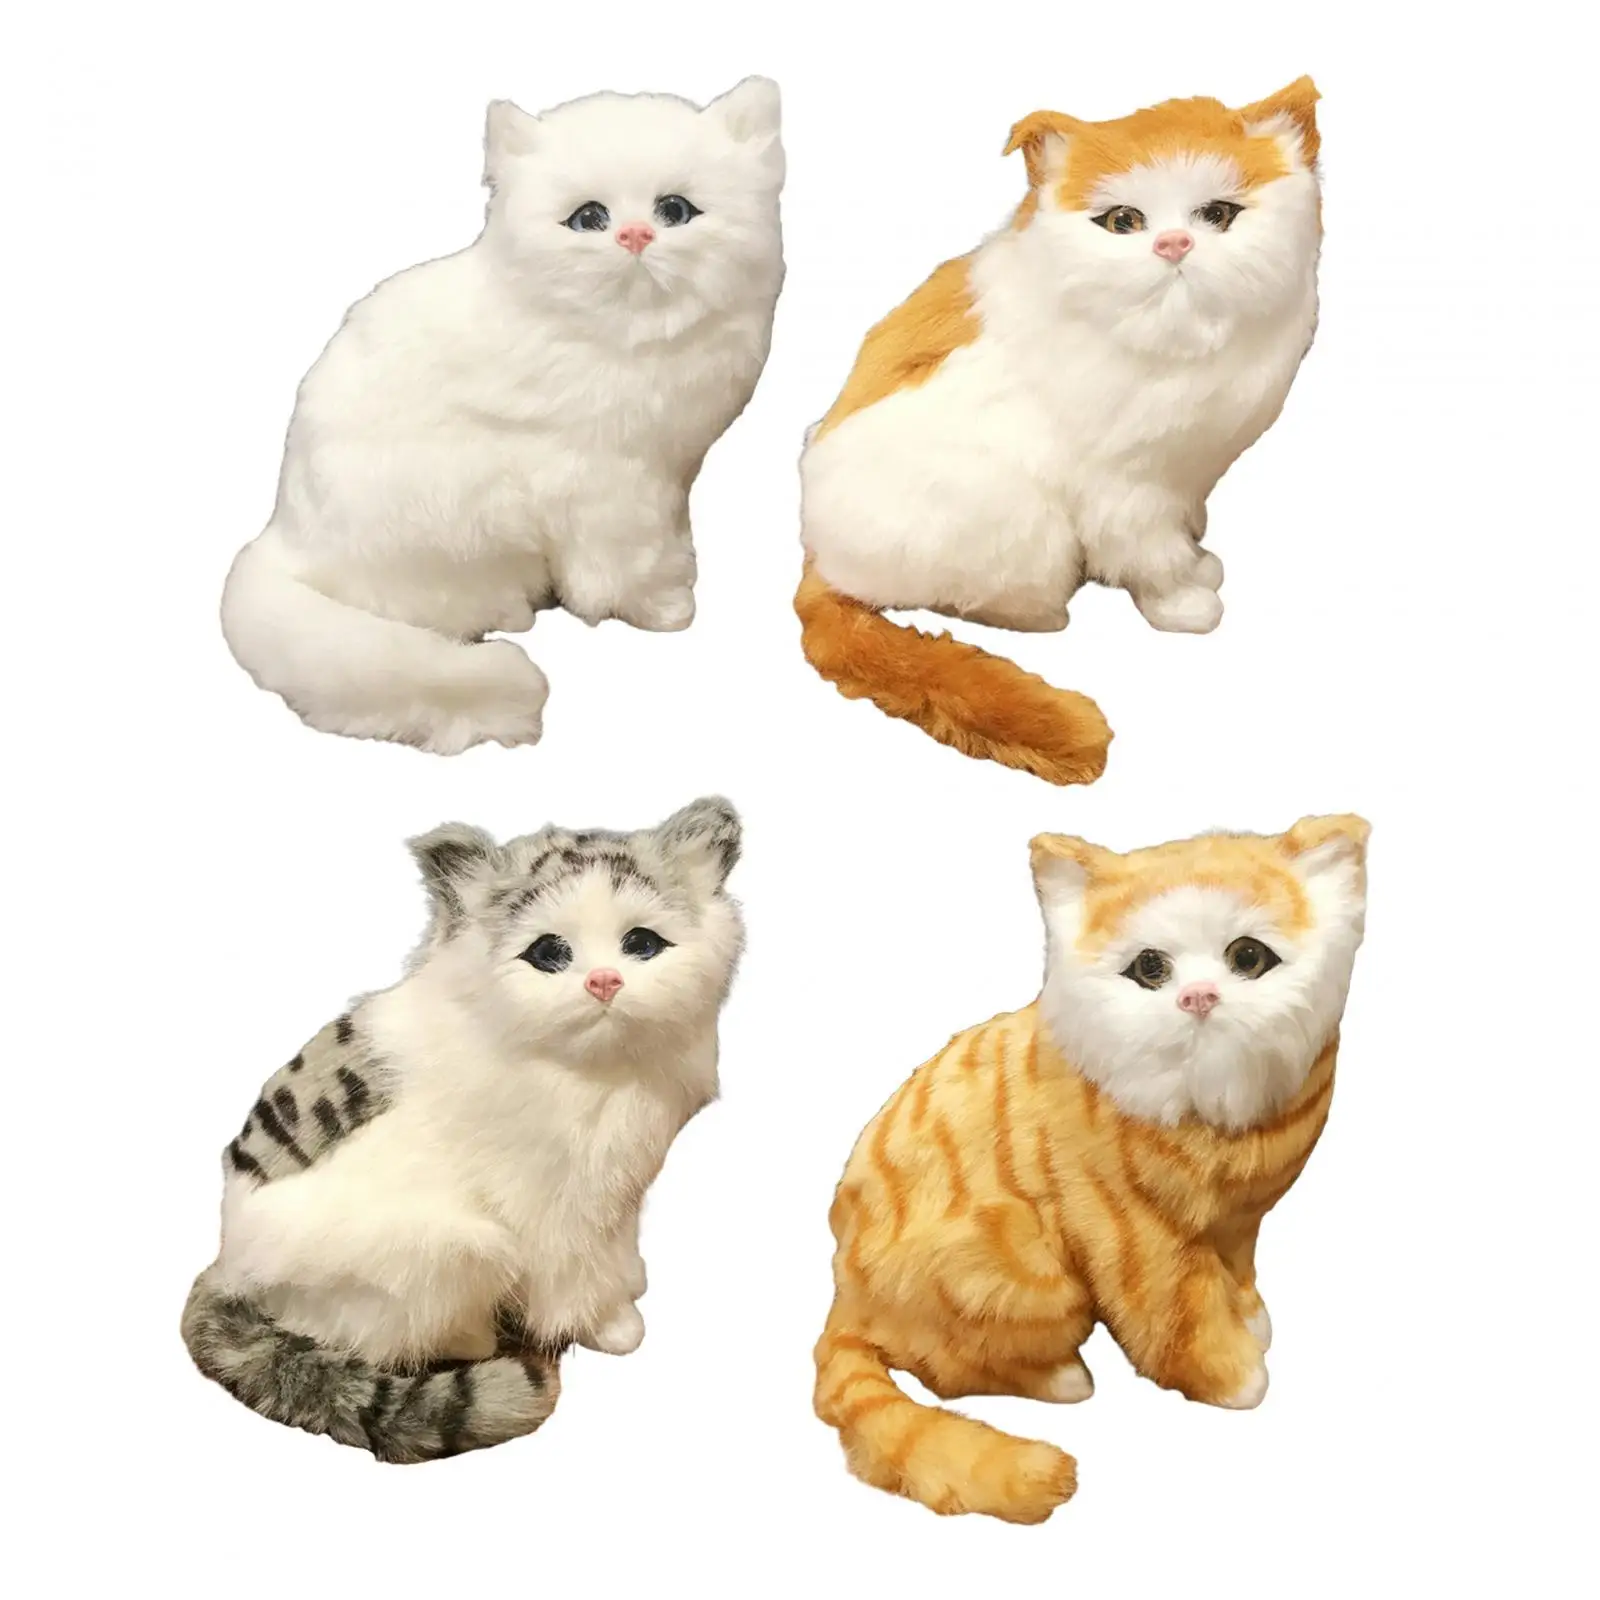 

Плюшевая кошка, реалистичное украшение кошки, Мультяшные игрушки ручной работы, мягкие маленькие плюшевые животные, фигурки кошек, игрушки для подарка на день рождения, друг, дети